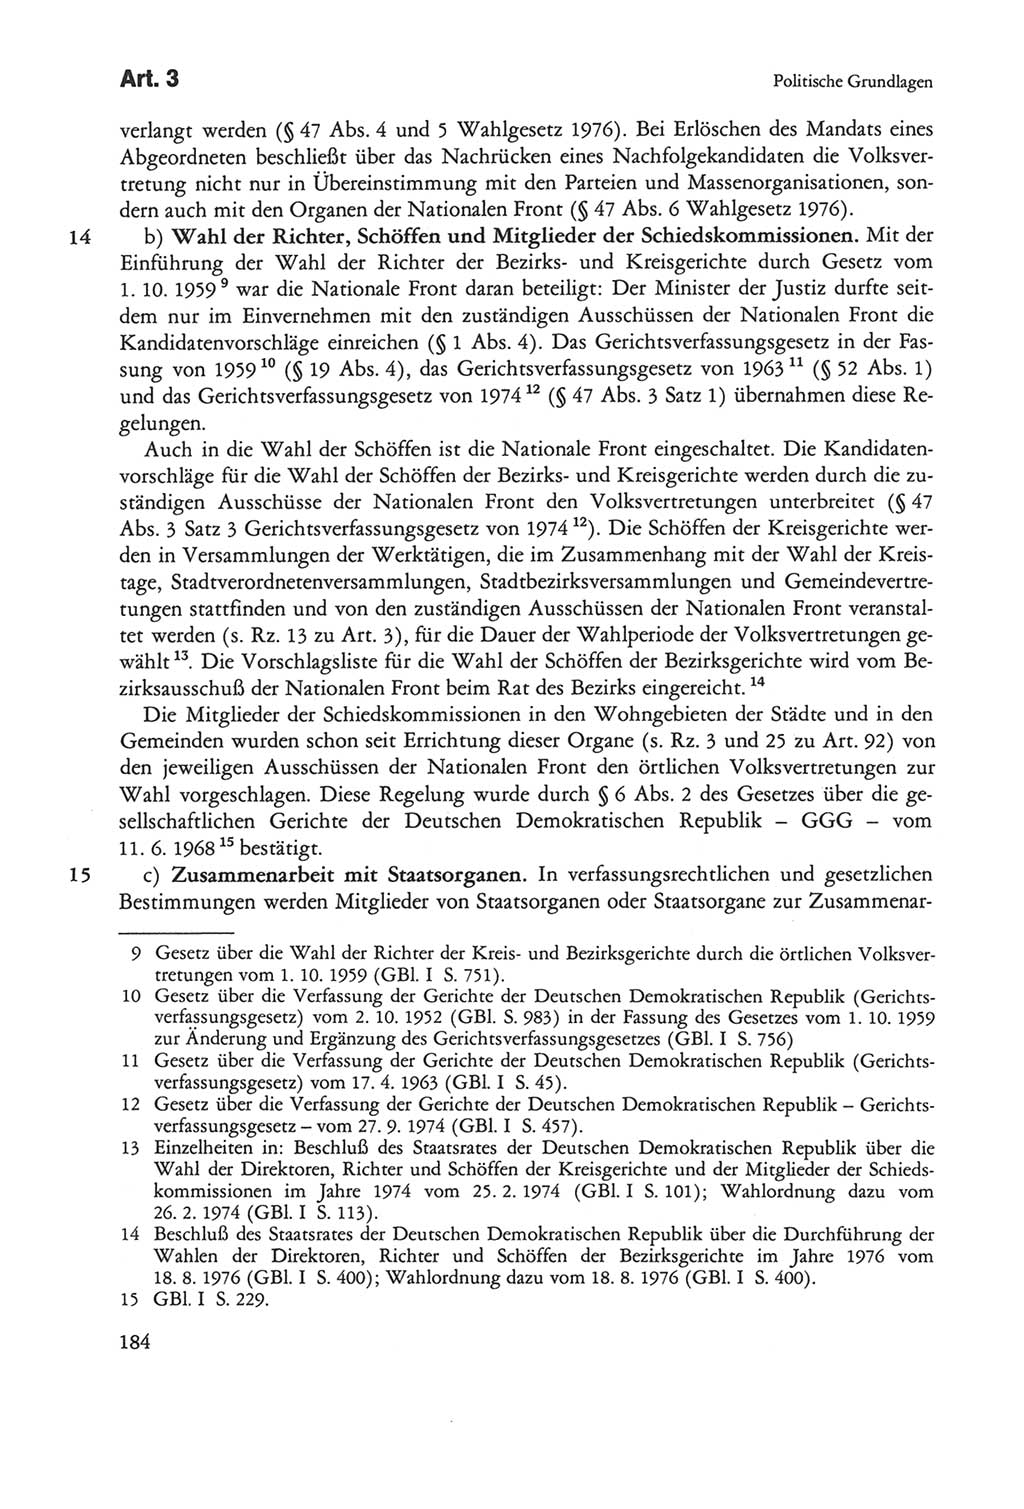 Die sozialistische Verfassung der Deutschen Demokratischen Republik (DDR), Kommentar mit einem Nachtrag 1997, Seite 184 (Soz. Verf. DDR Komm. Nachtr. 1997, S. 184)